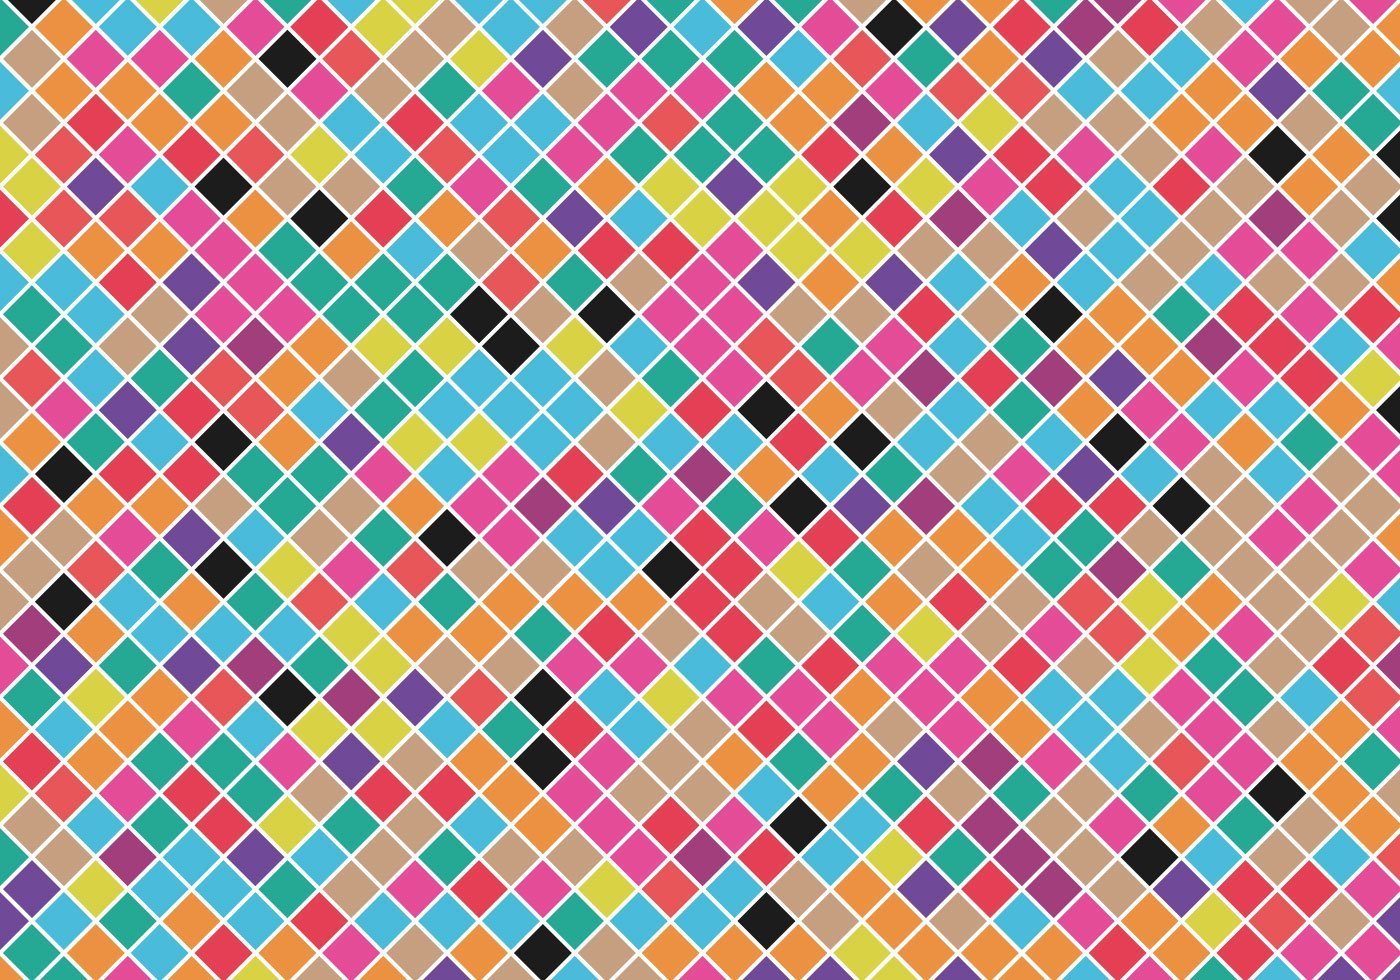 Маленький цветные квадратики. Цветные квадраты. Разноцветные квадратики. Разноцветные квадратики маленькие. Много цветных квадратиков.